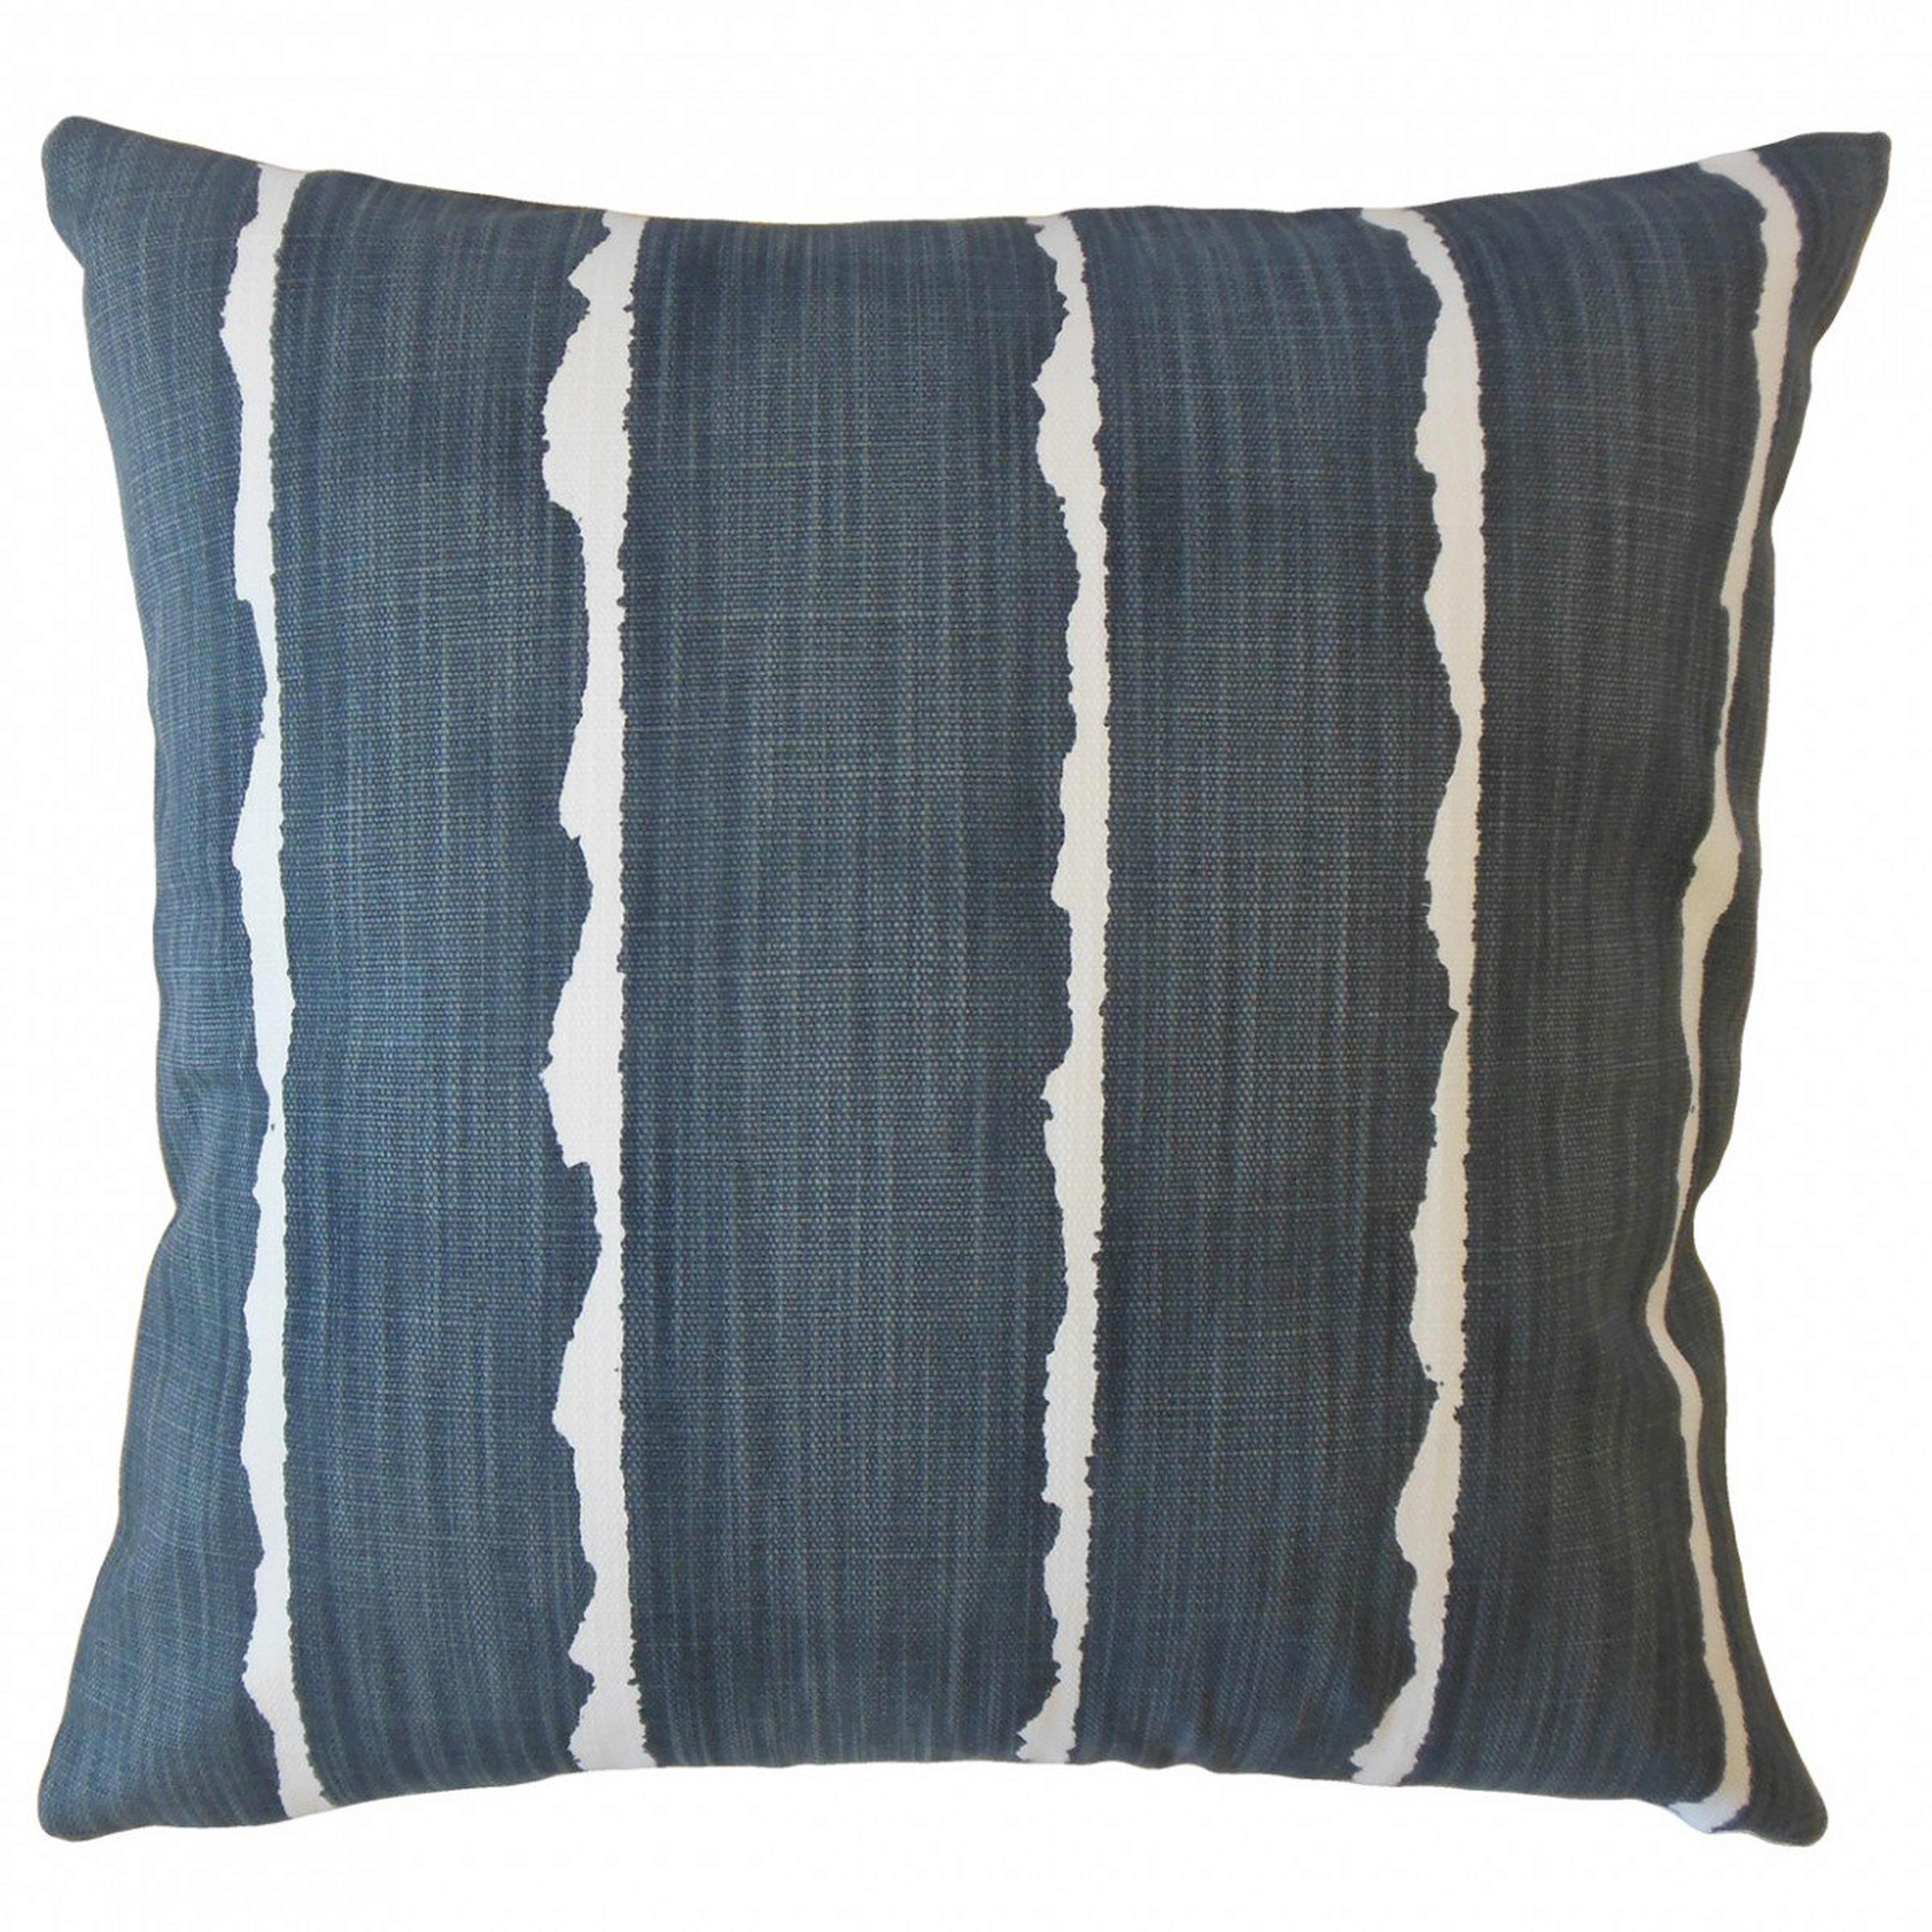 Panya Striped Pillow Carbon - Linen & Seam